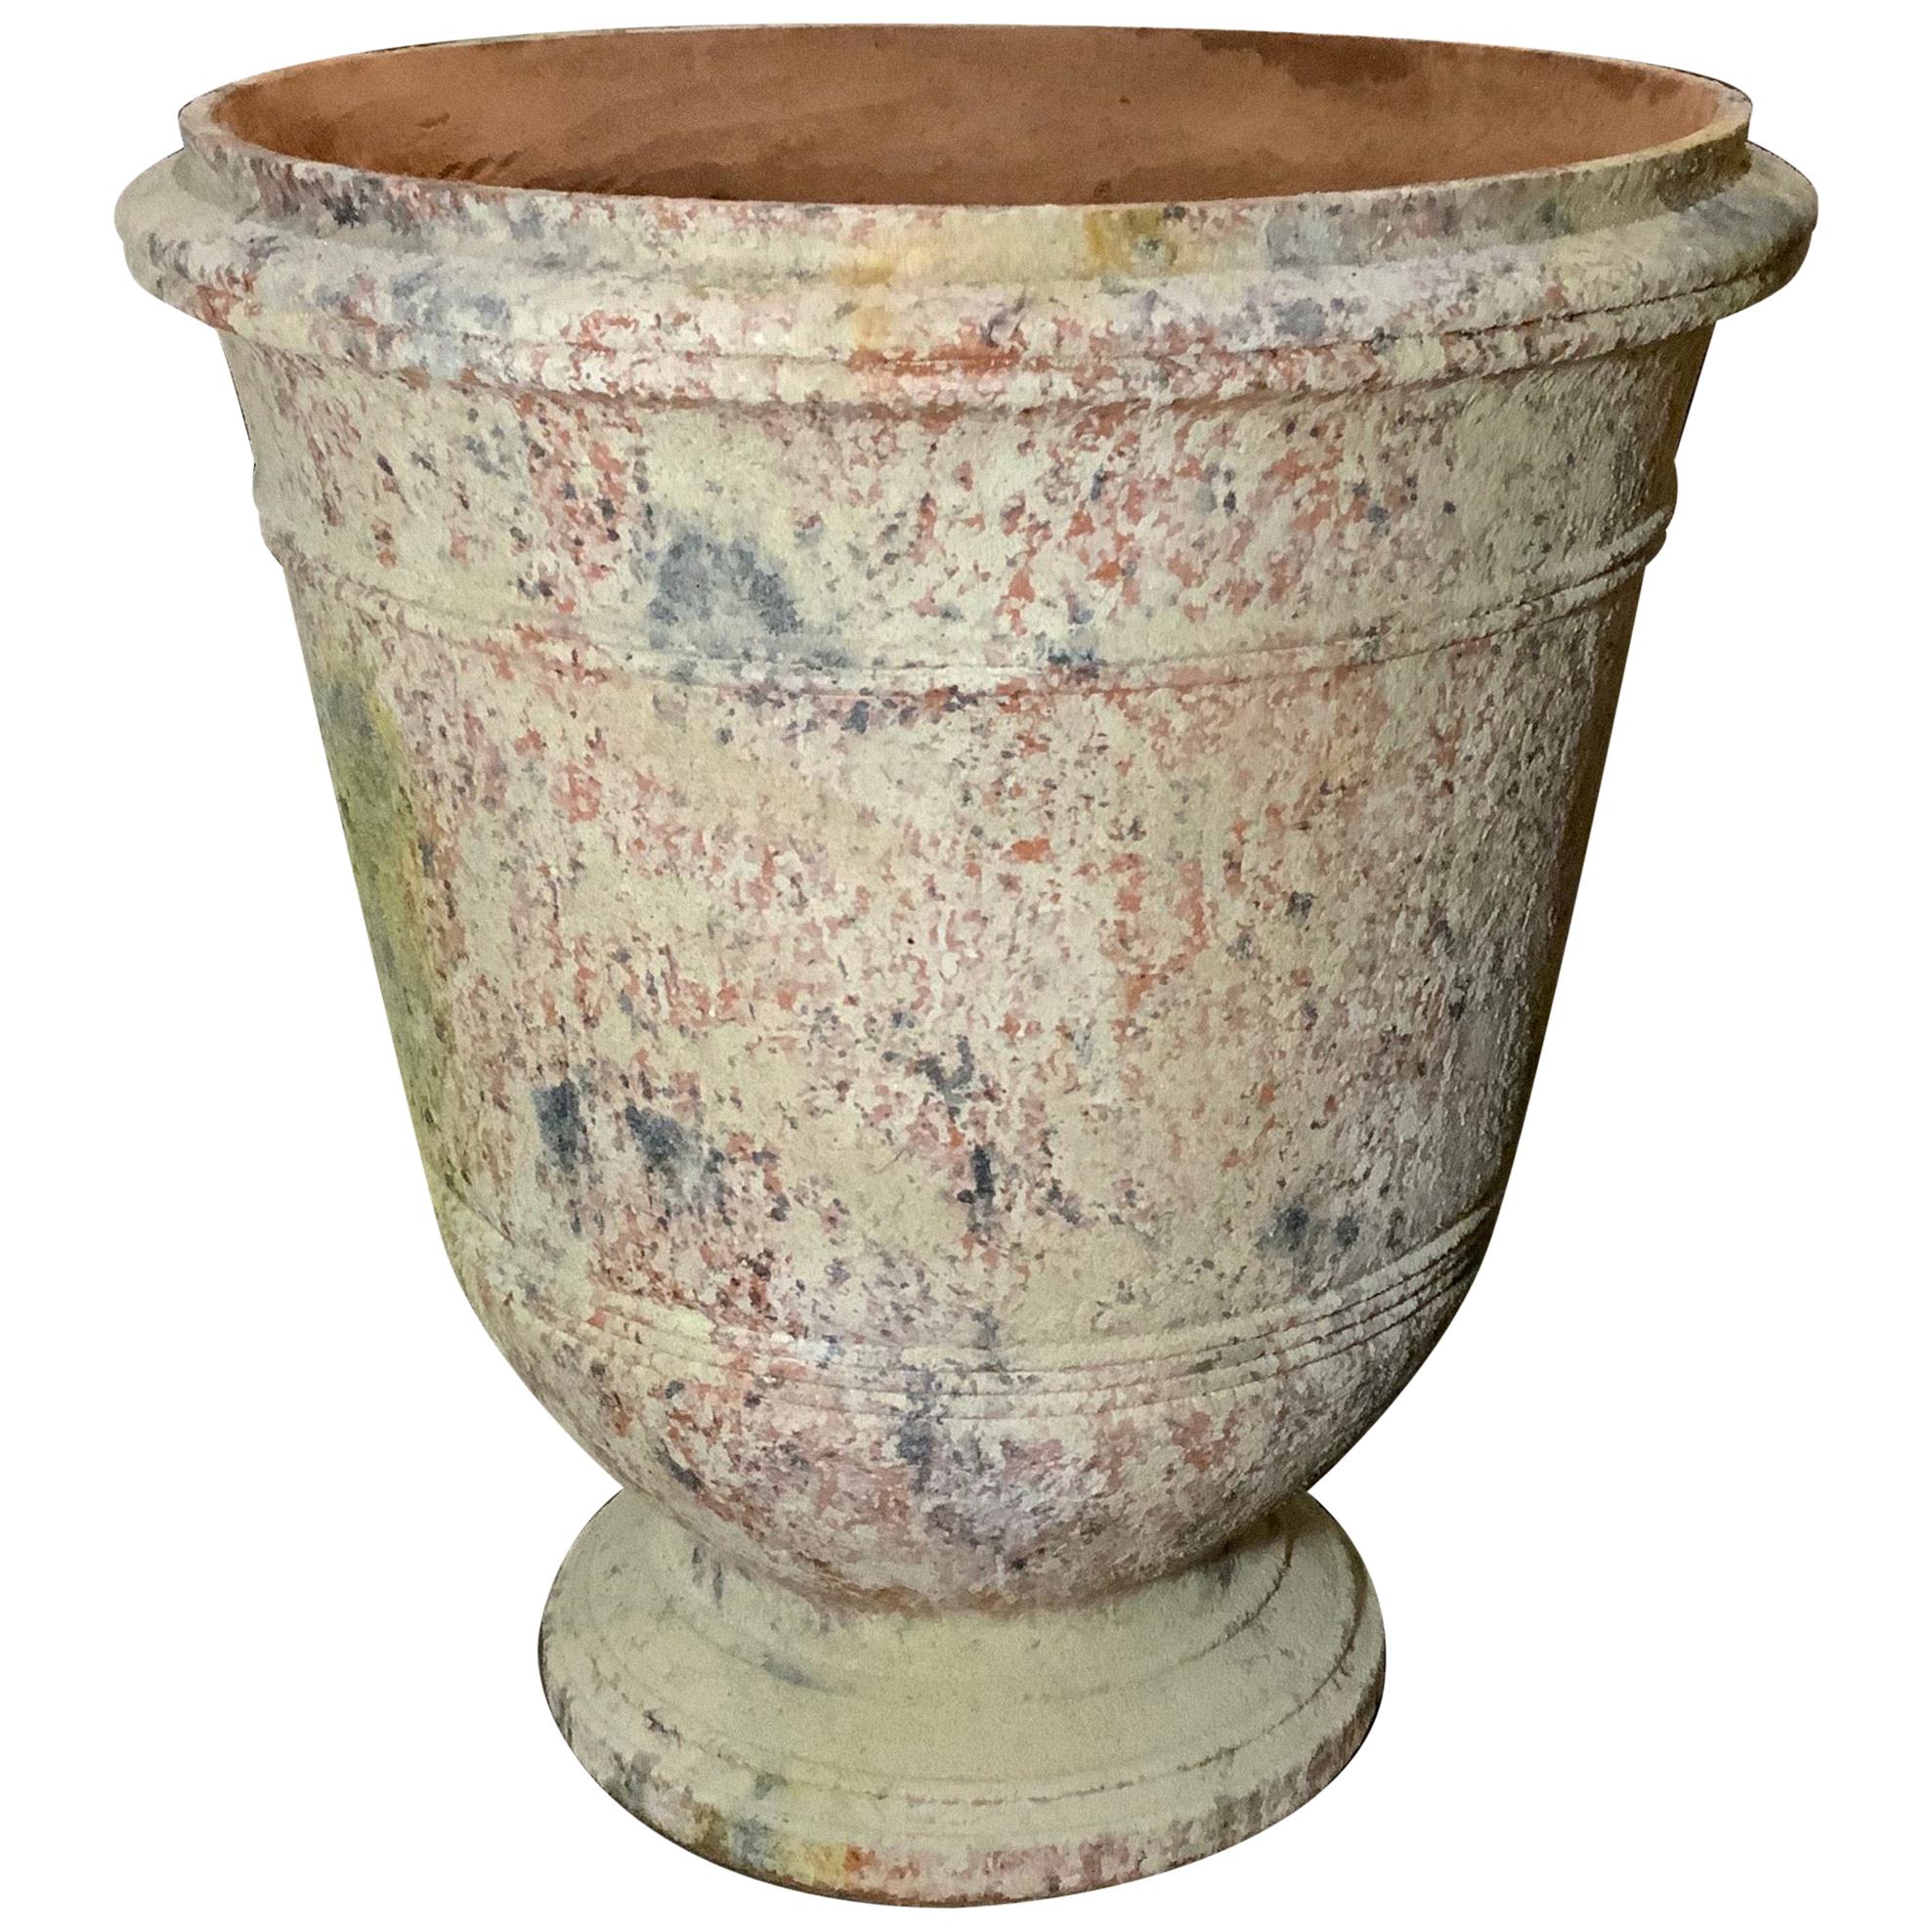 Handmade Terracotta Urn from Provence